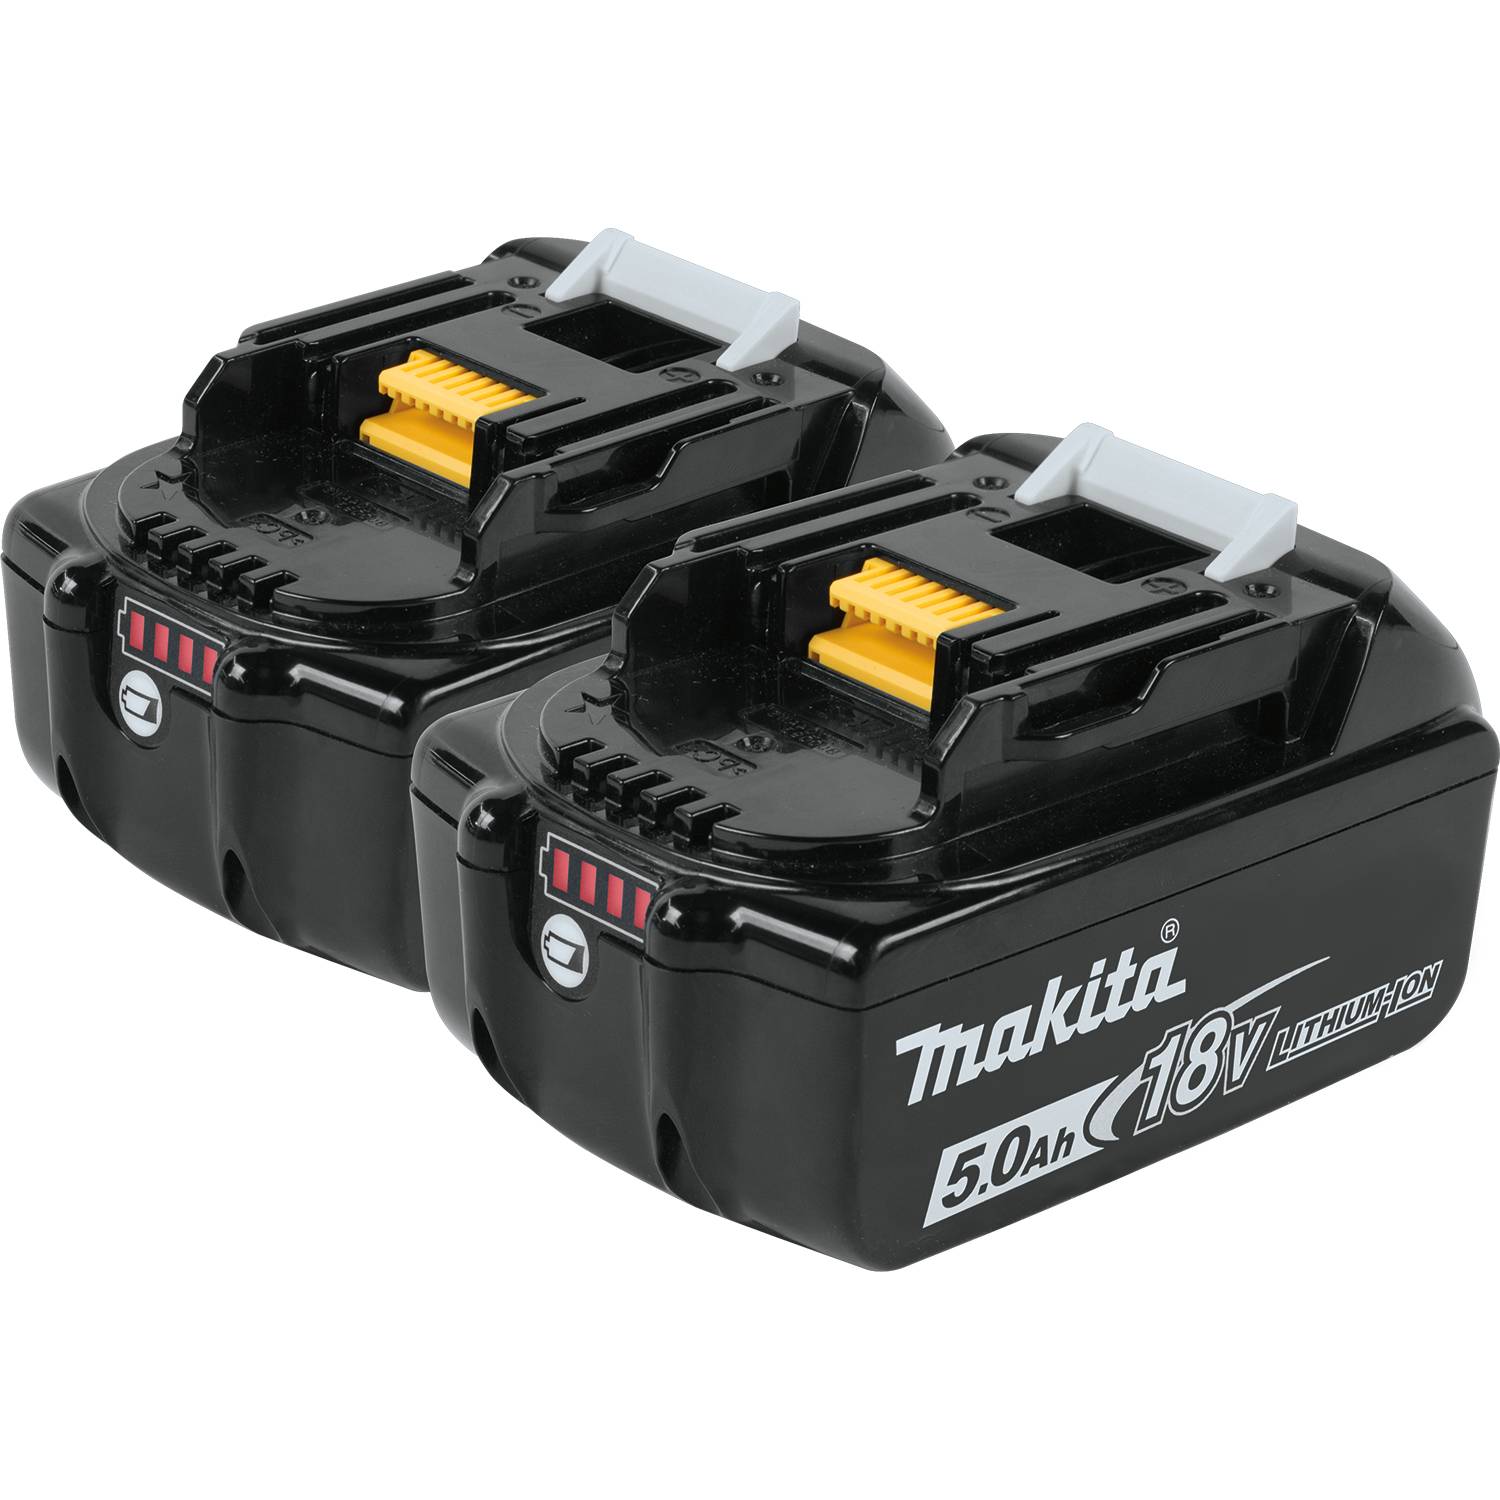 BL1850B-2 Makita Battery Pack, 18V 5.0AH 1